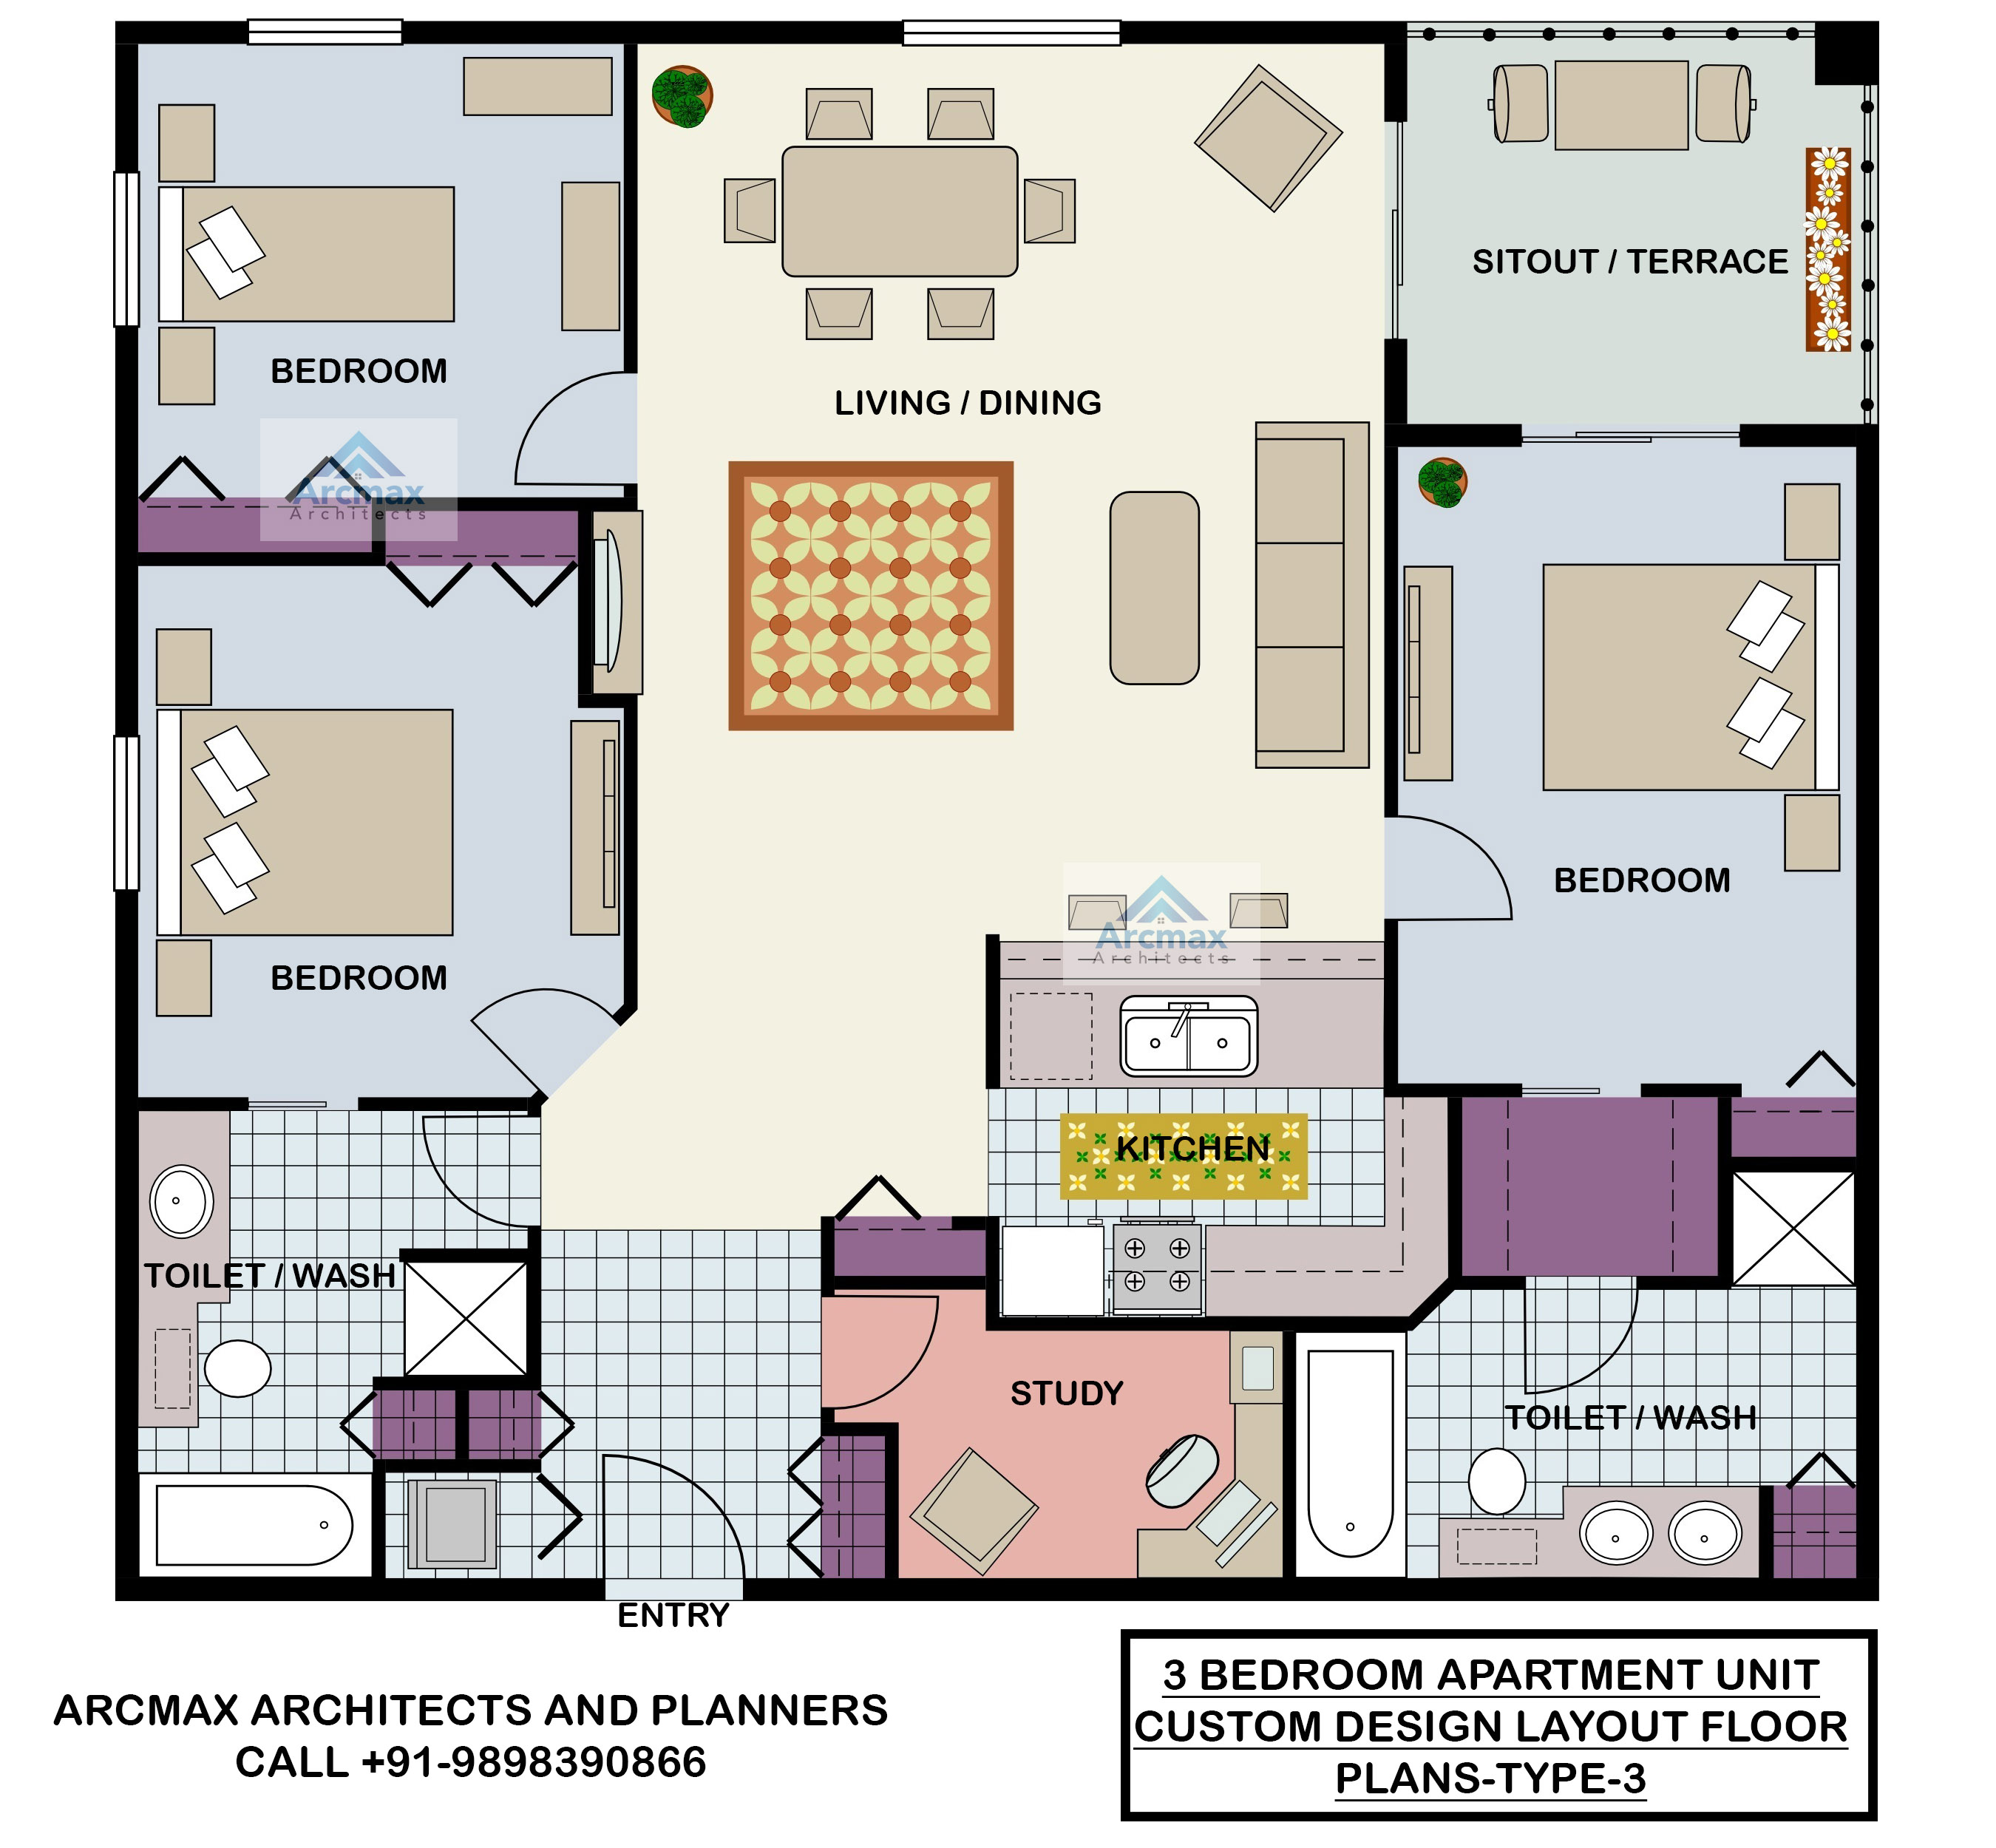 Typical Apartment Floor Plan | designinte.com